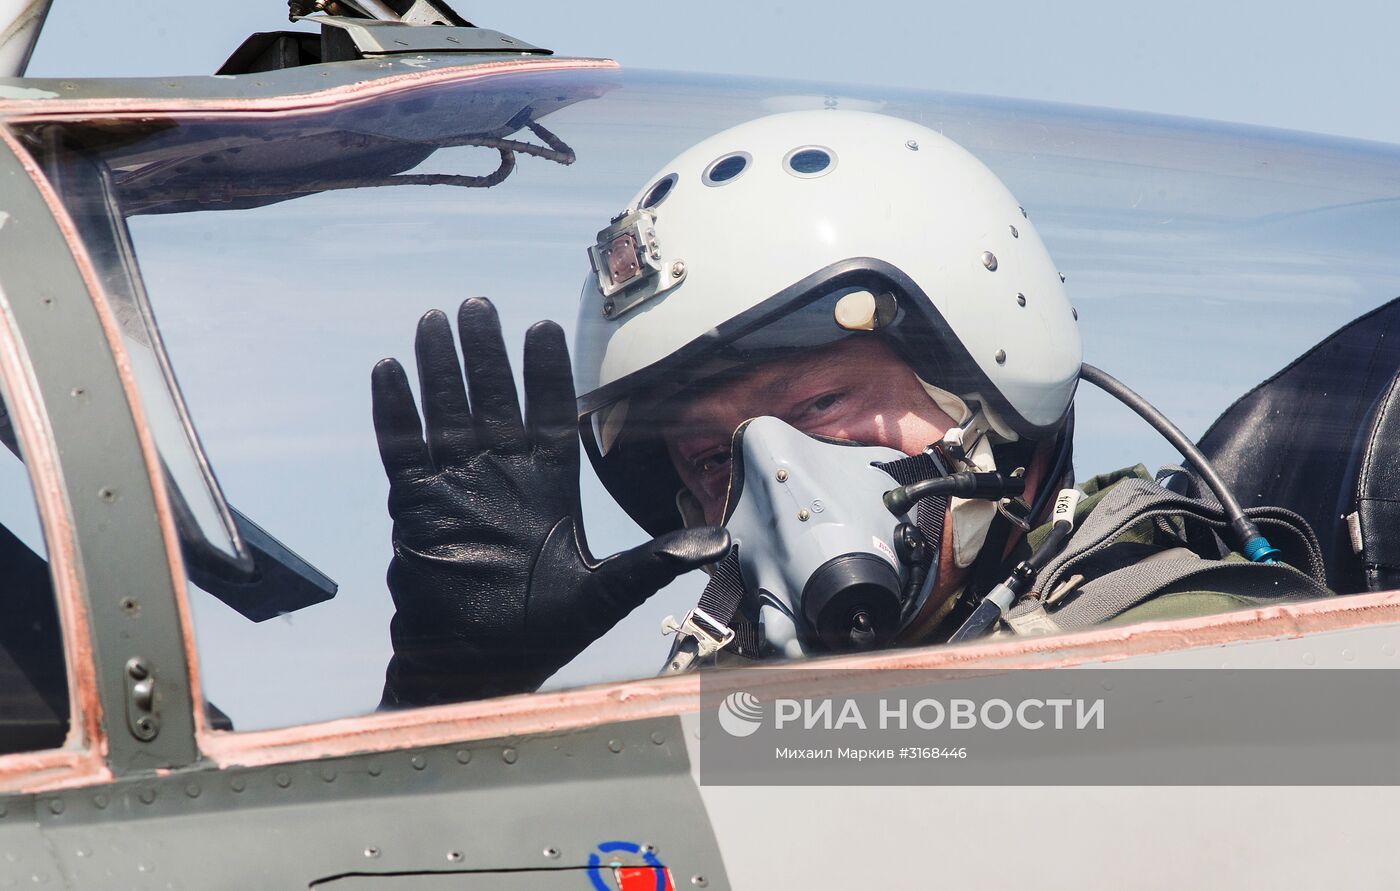 Президент Украины П. Порошенко совершил полет на истребителе МиГ-29